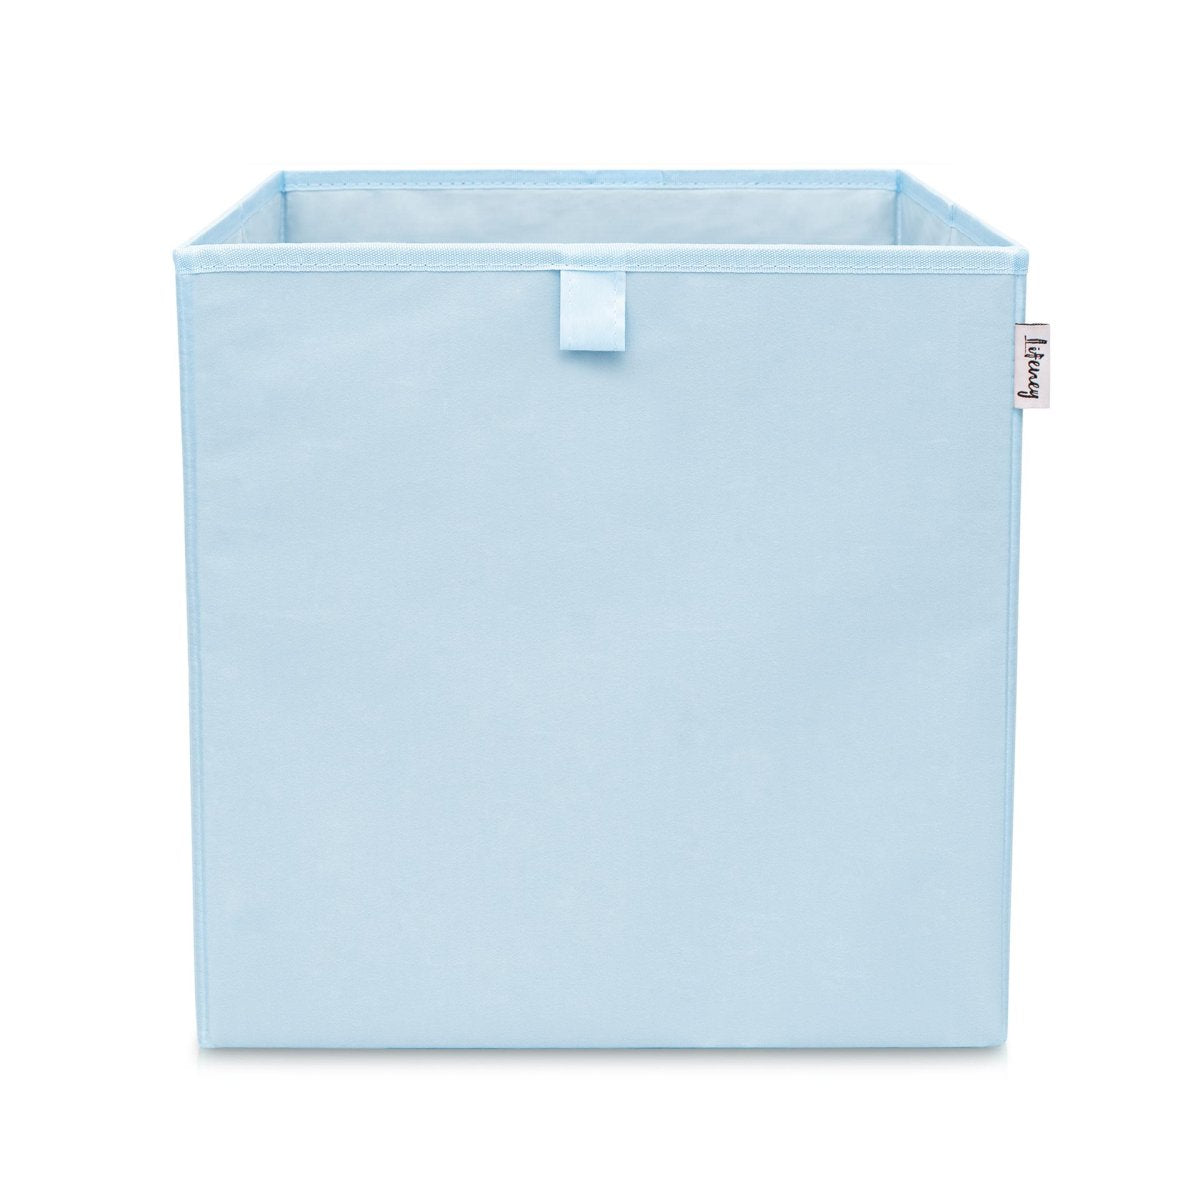 Boîte de rangement - Boîte à lessive - Bleu pastel